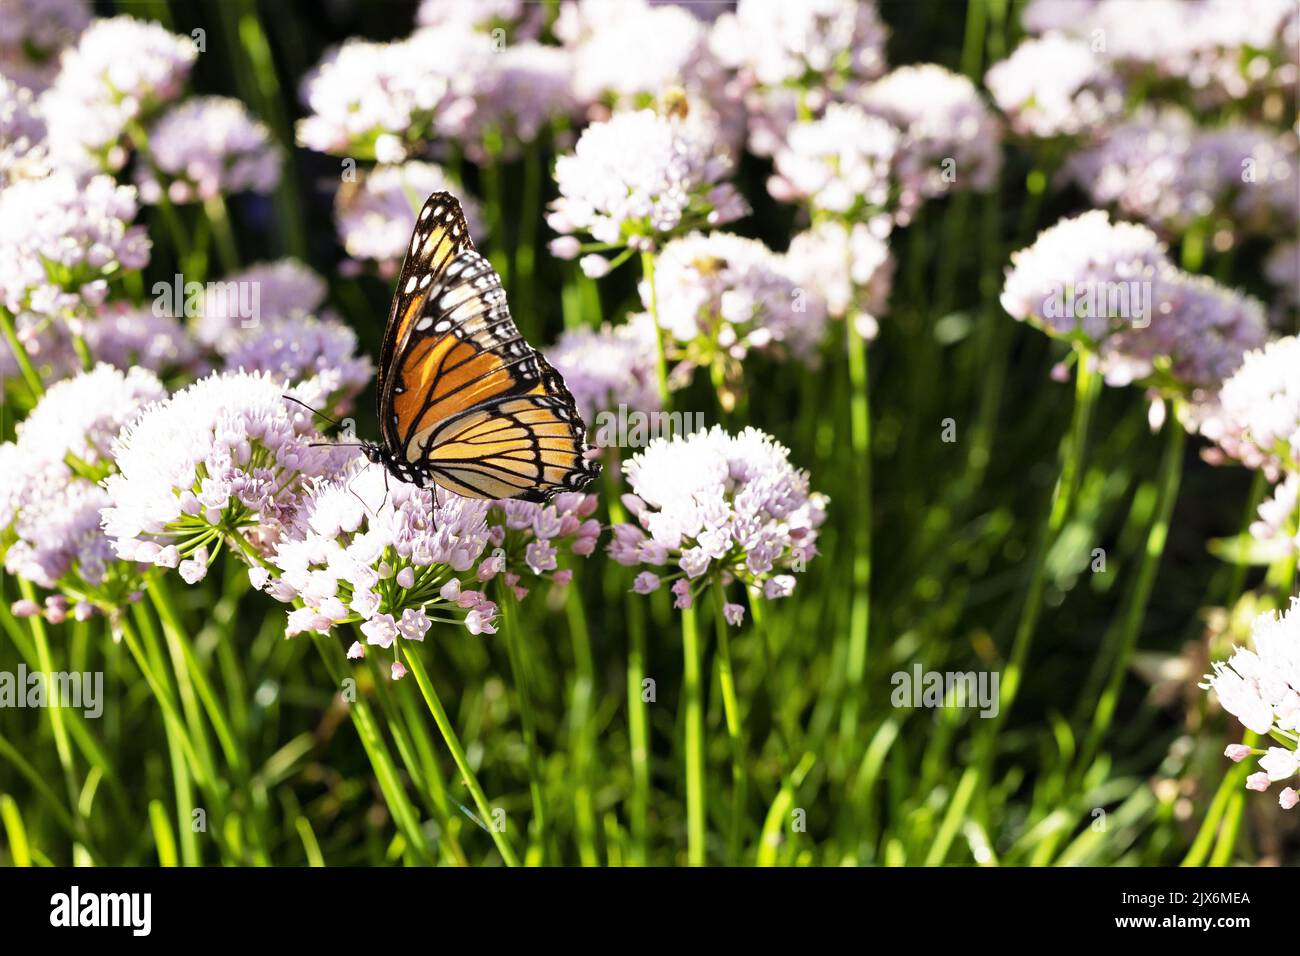 Un papillon monarque sur une fleur d'oignon ornementale allium 'sugar melt'. Banque D'Images